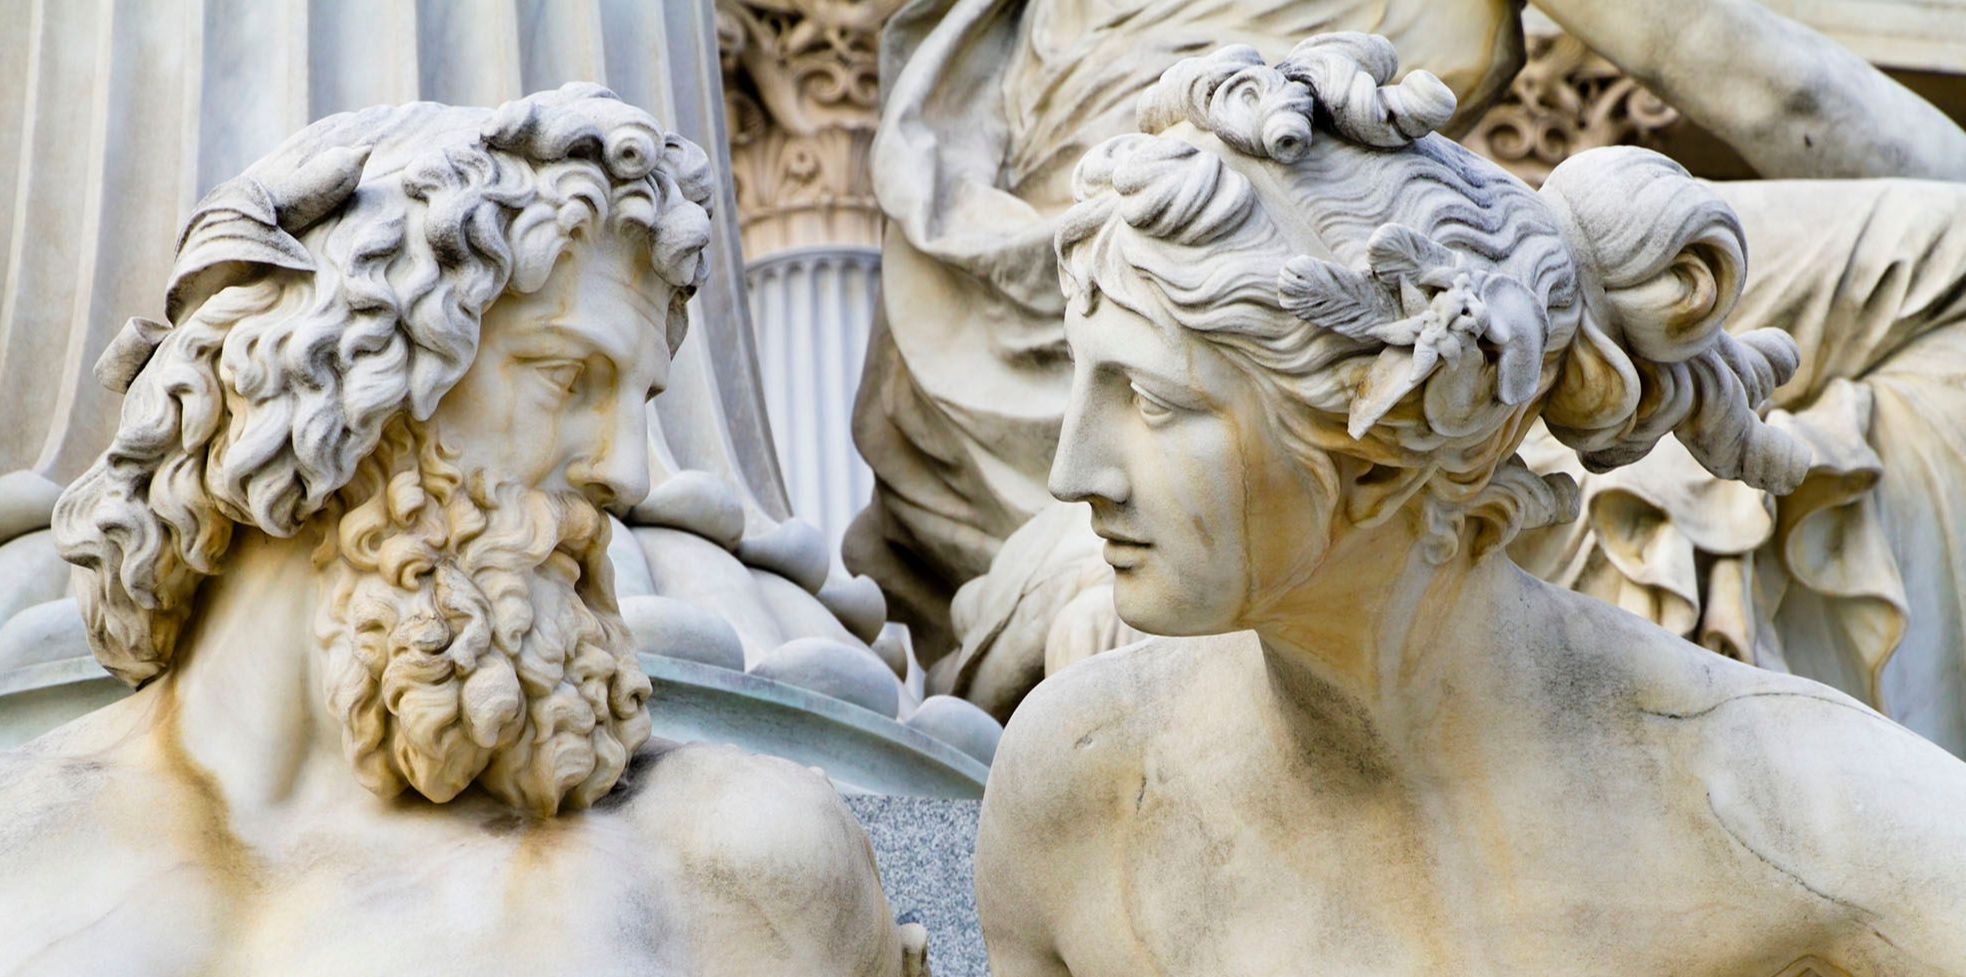 Abbildung von zwei griechischen antiken Statuen